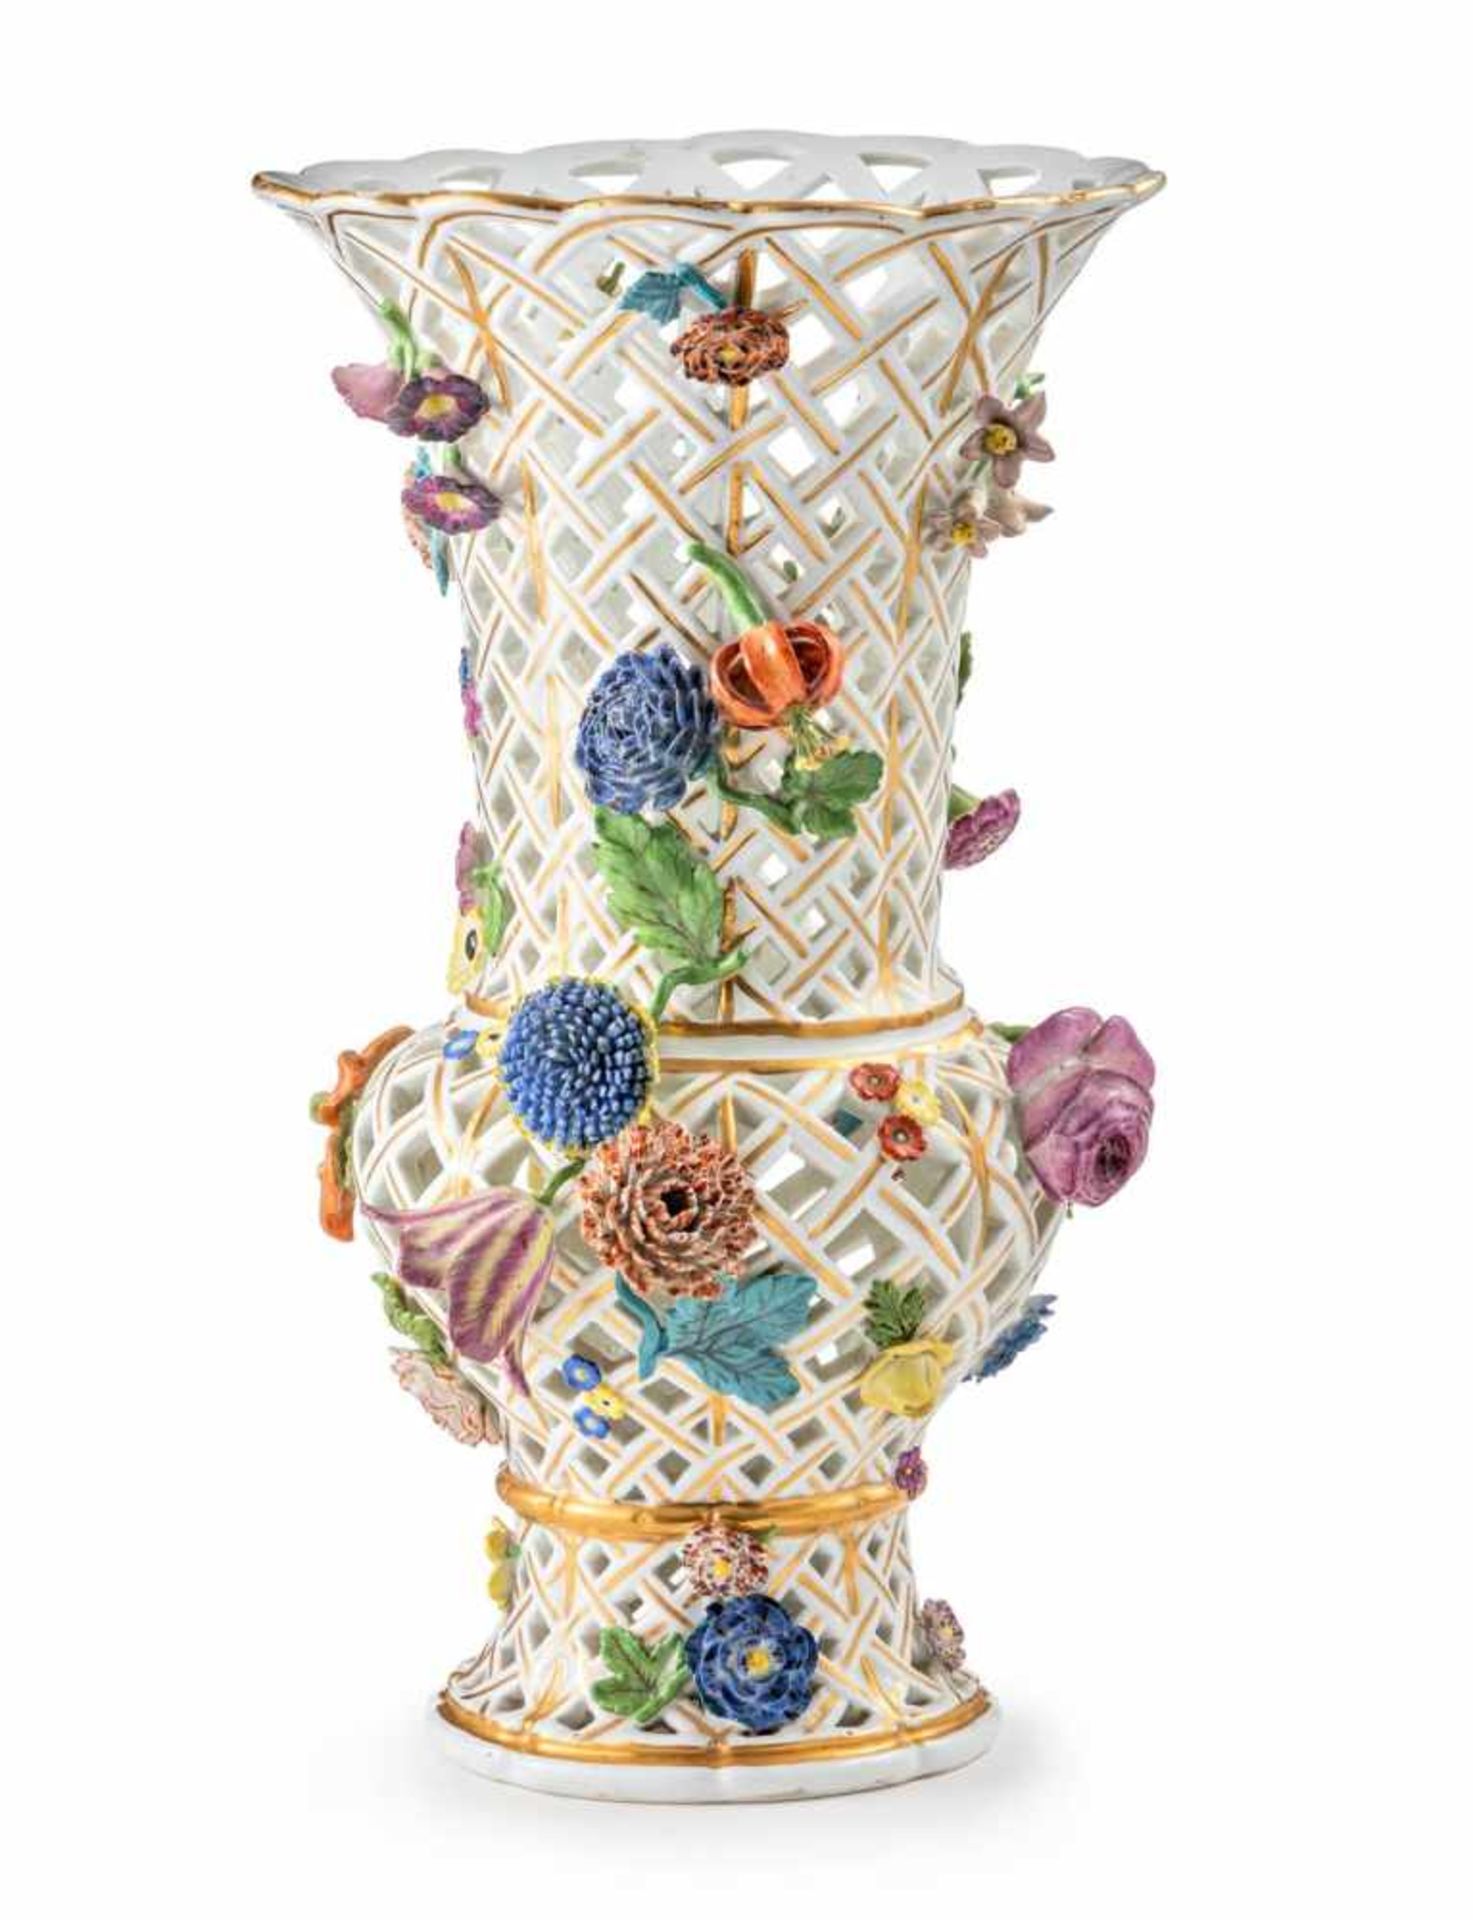 Flötenvase mit BlütenbelegenMeissen, um 1750Vollständig korbartig durchbrochene Wandung, reich mit